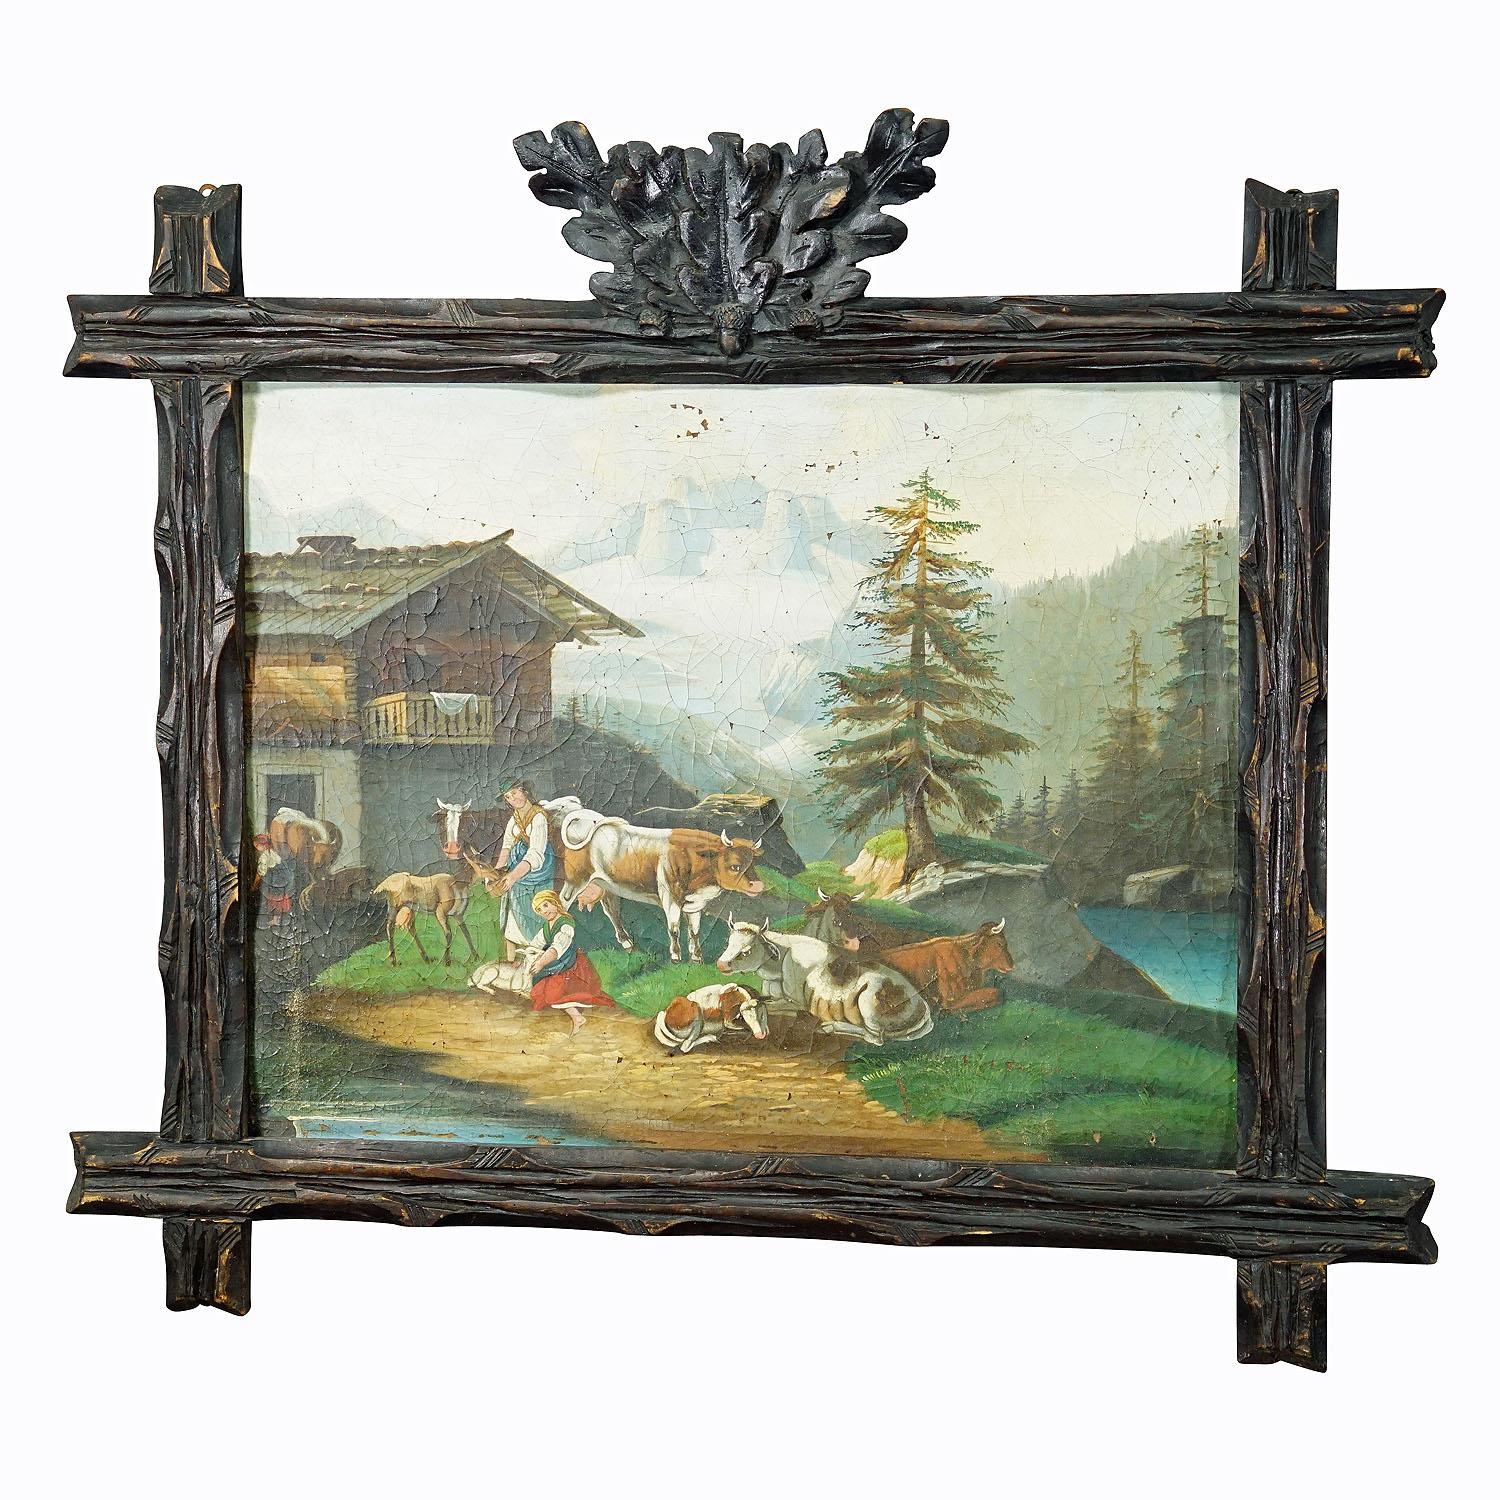 Peinture à l'huile représentant un paysage folklorique avec des châteaux, des chèvres et des femmes de fermiers, vers 1900

Une peinture à l'huile antique colorée représentant une famille de fermiers bavarois avec leurs bêtes et leurs chèvres. La